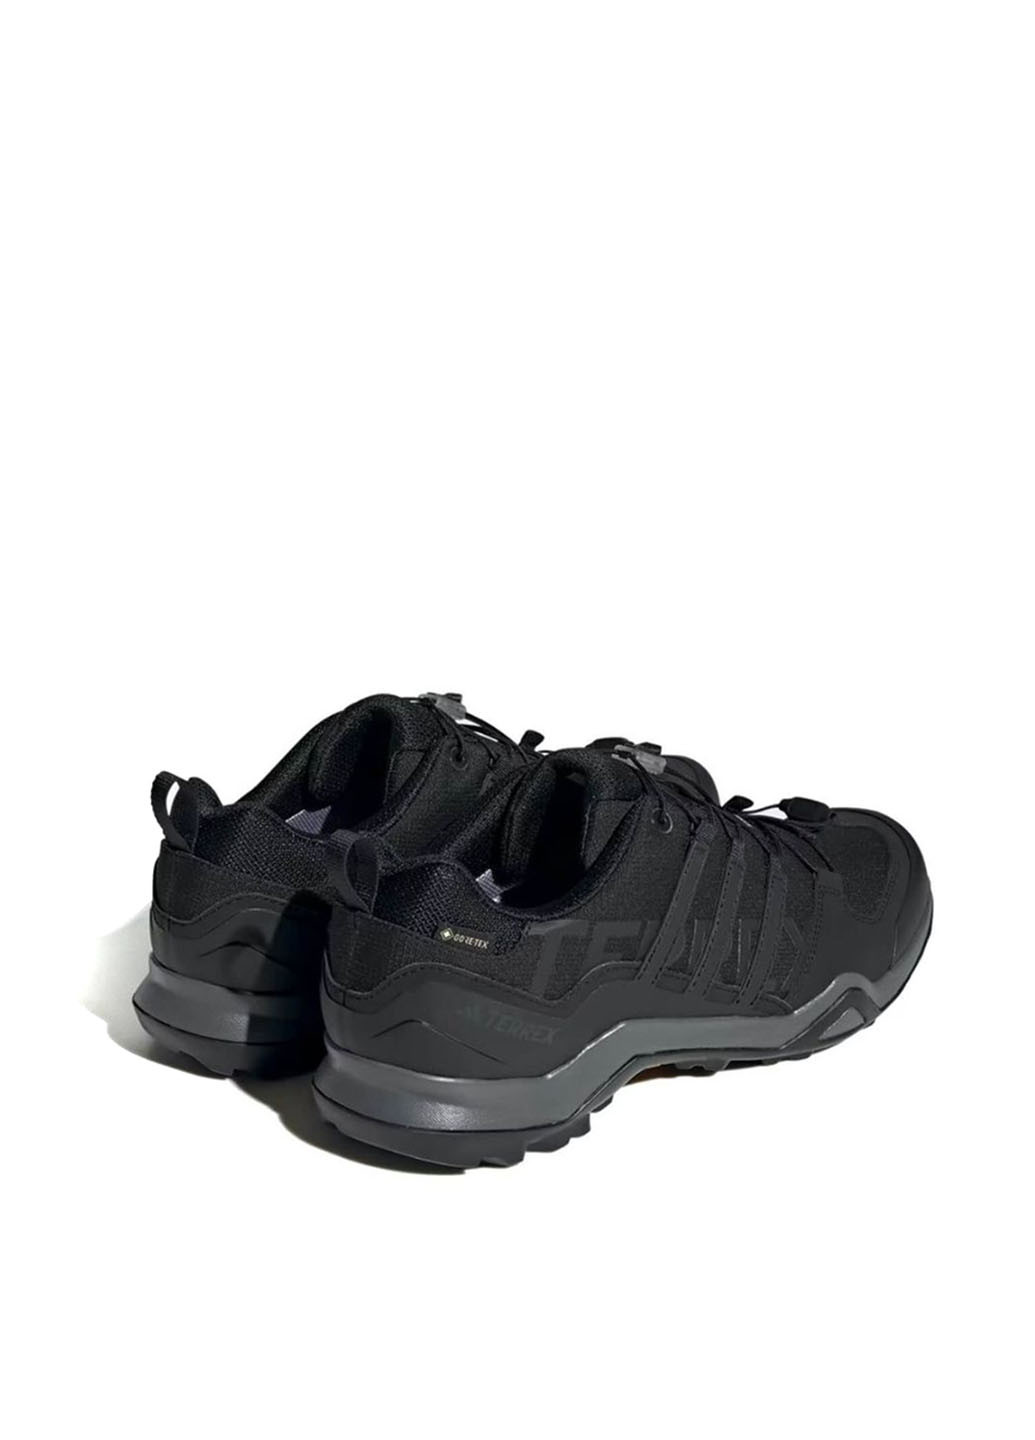 Черные демисезонные кроссовки if7631_2024 adidas Terrex Swift R2 GORE-TEX